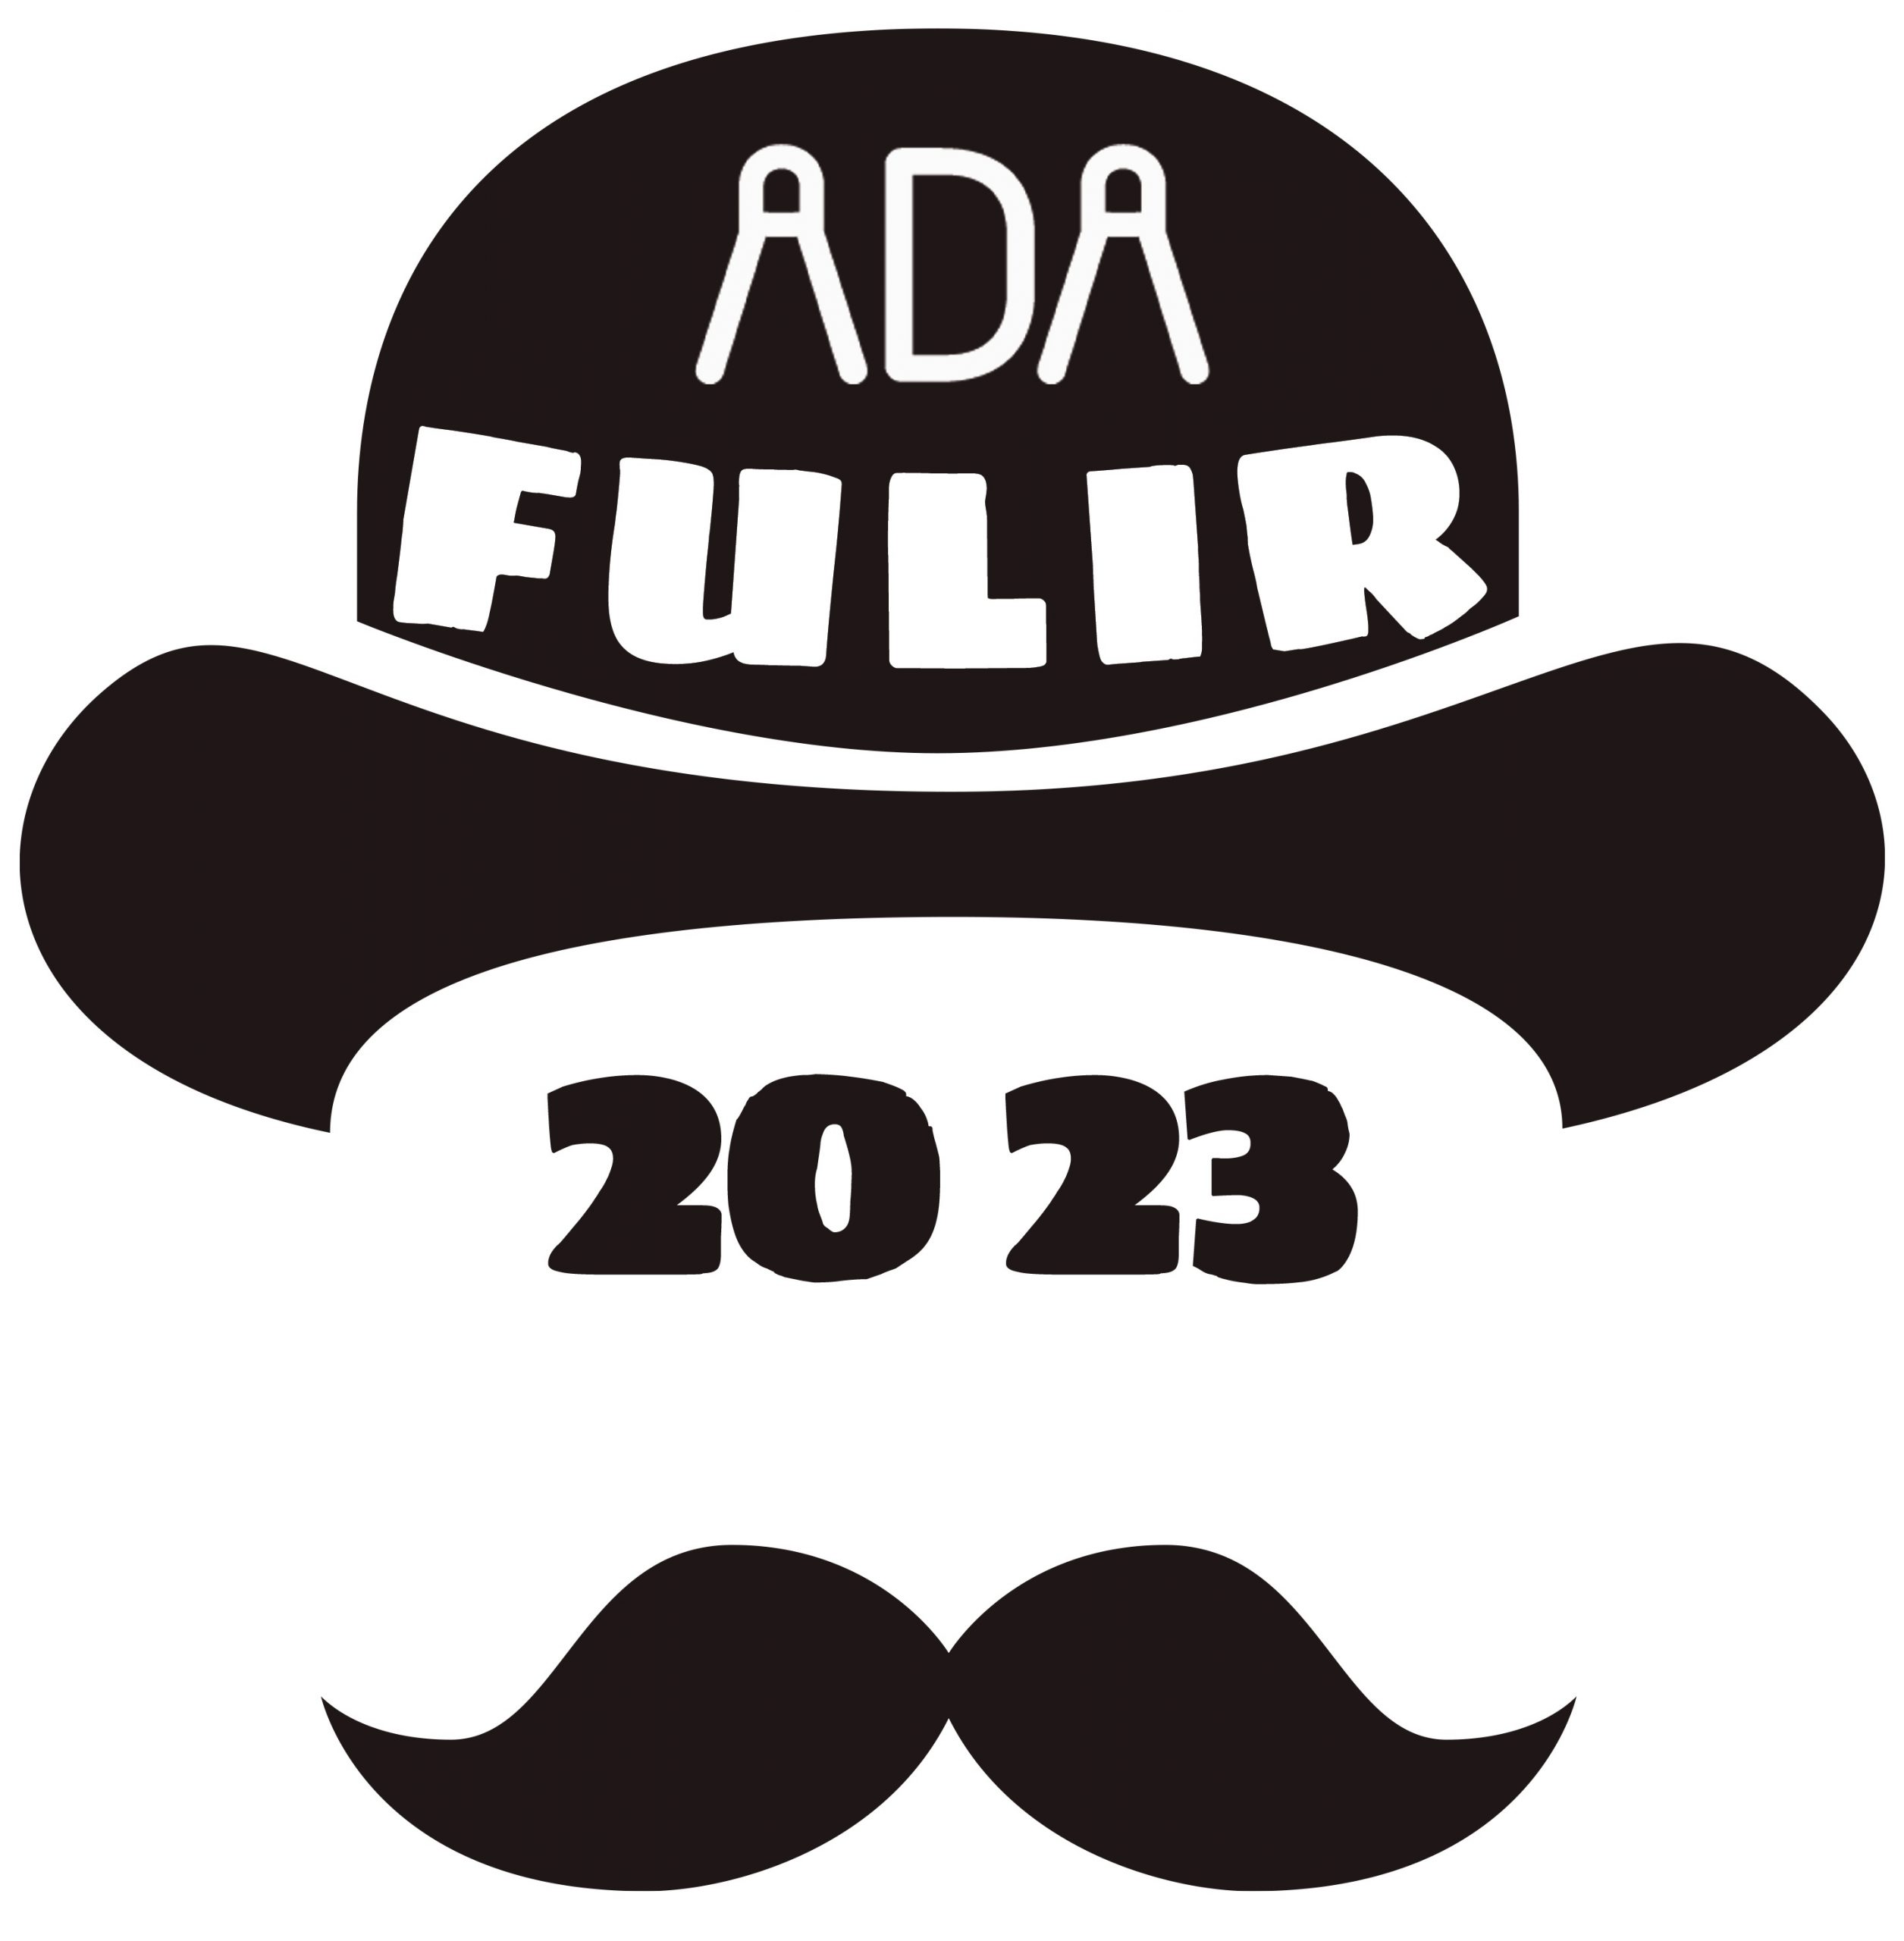 ADA FULIR 2023